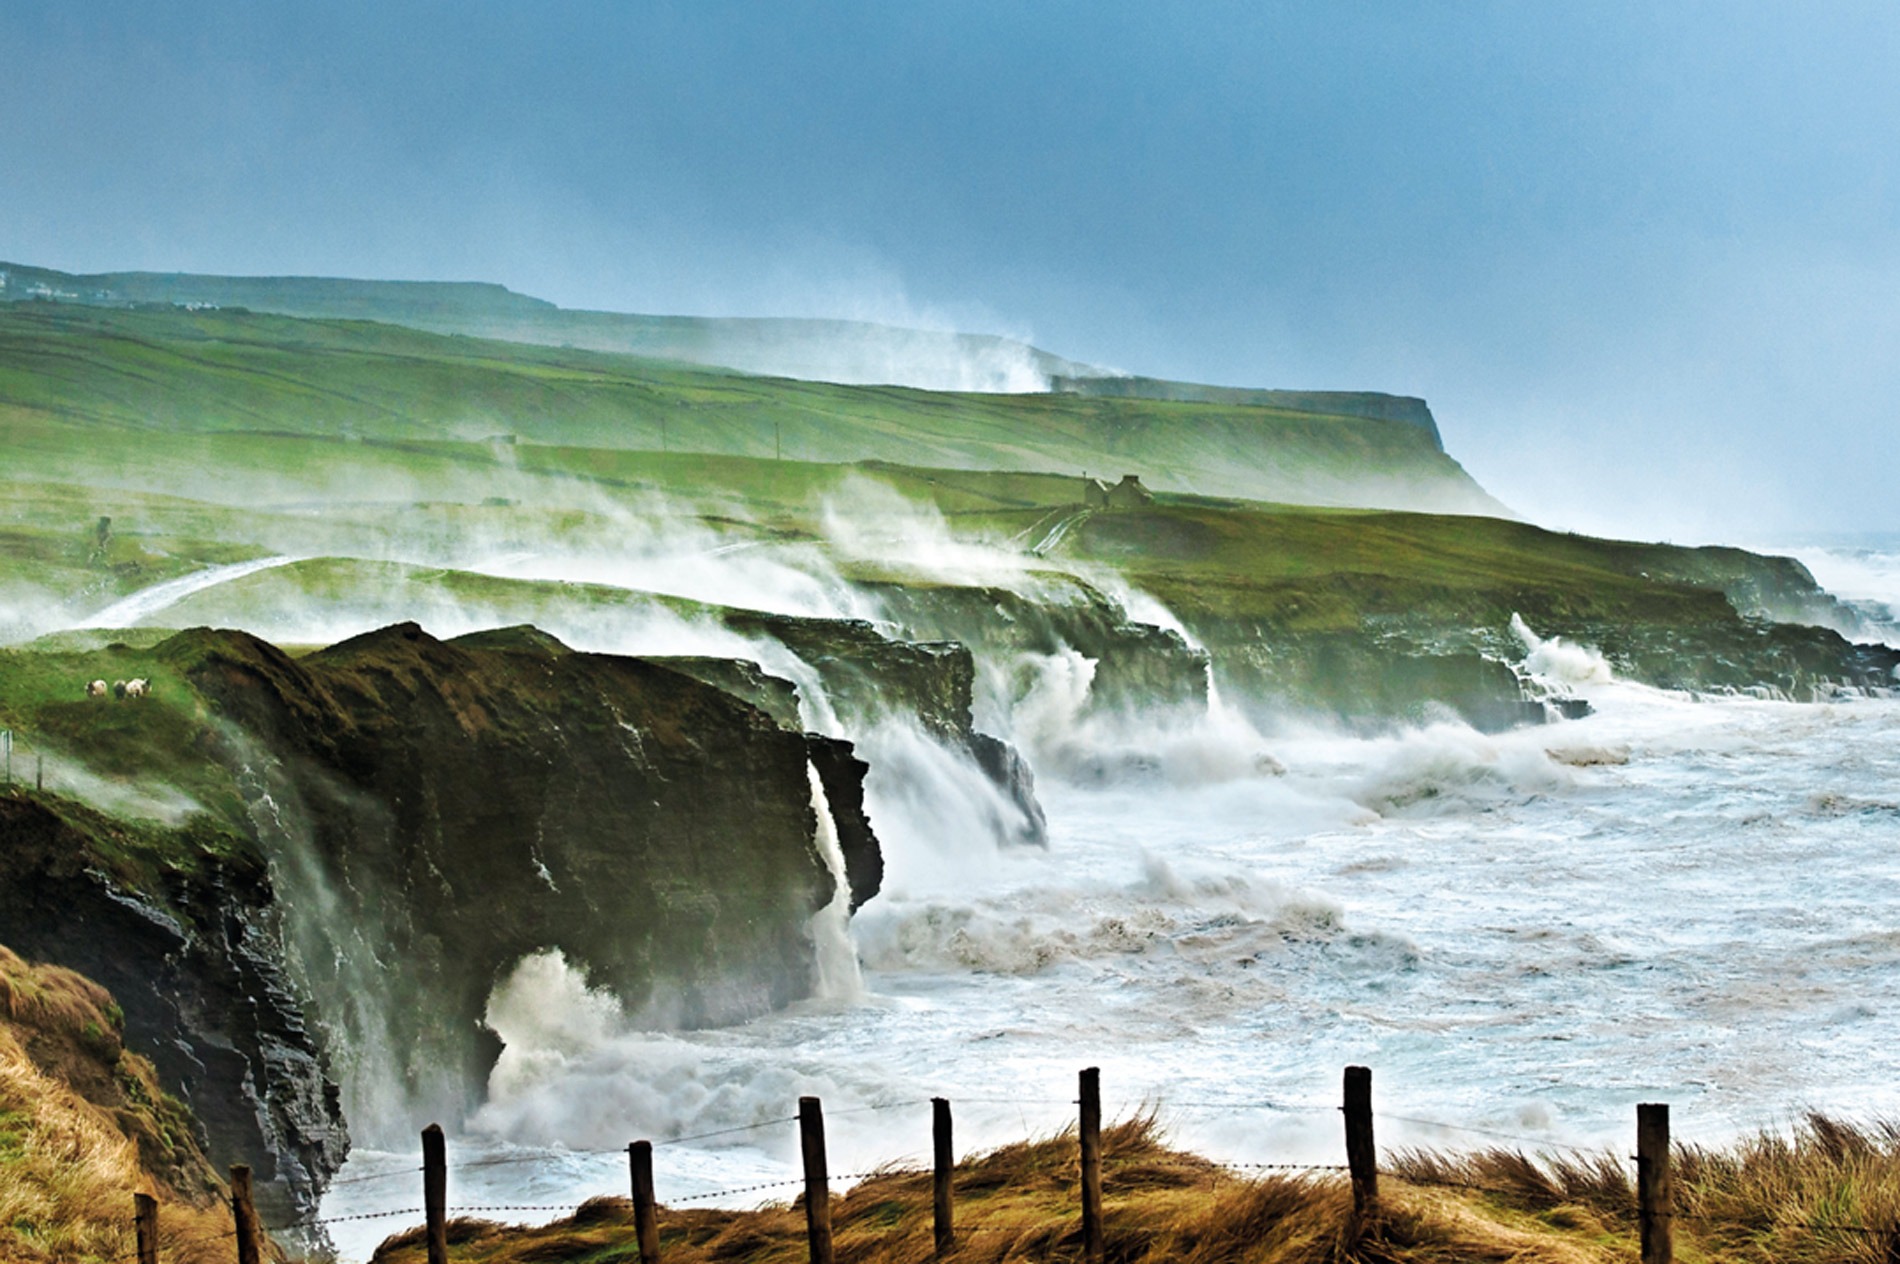 Le Wild Atlantic Way | Ireland.com